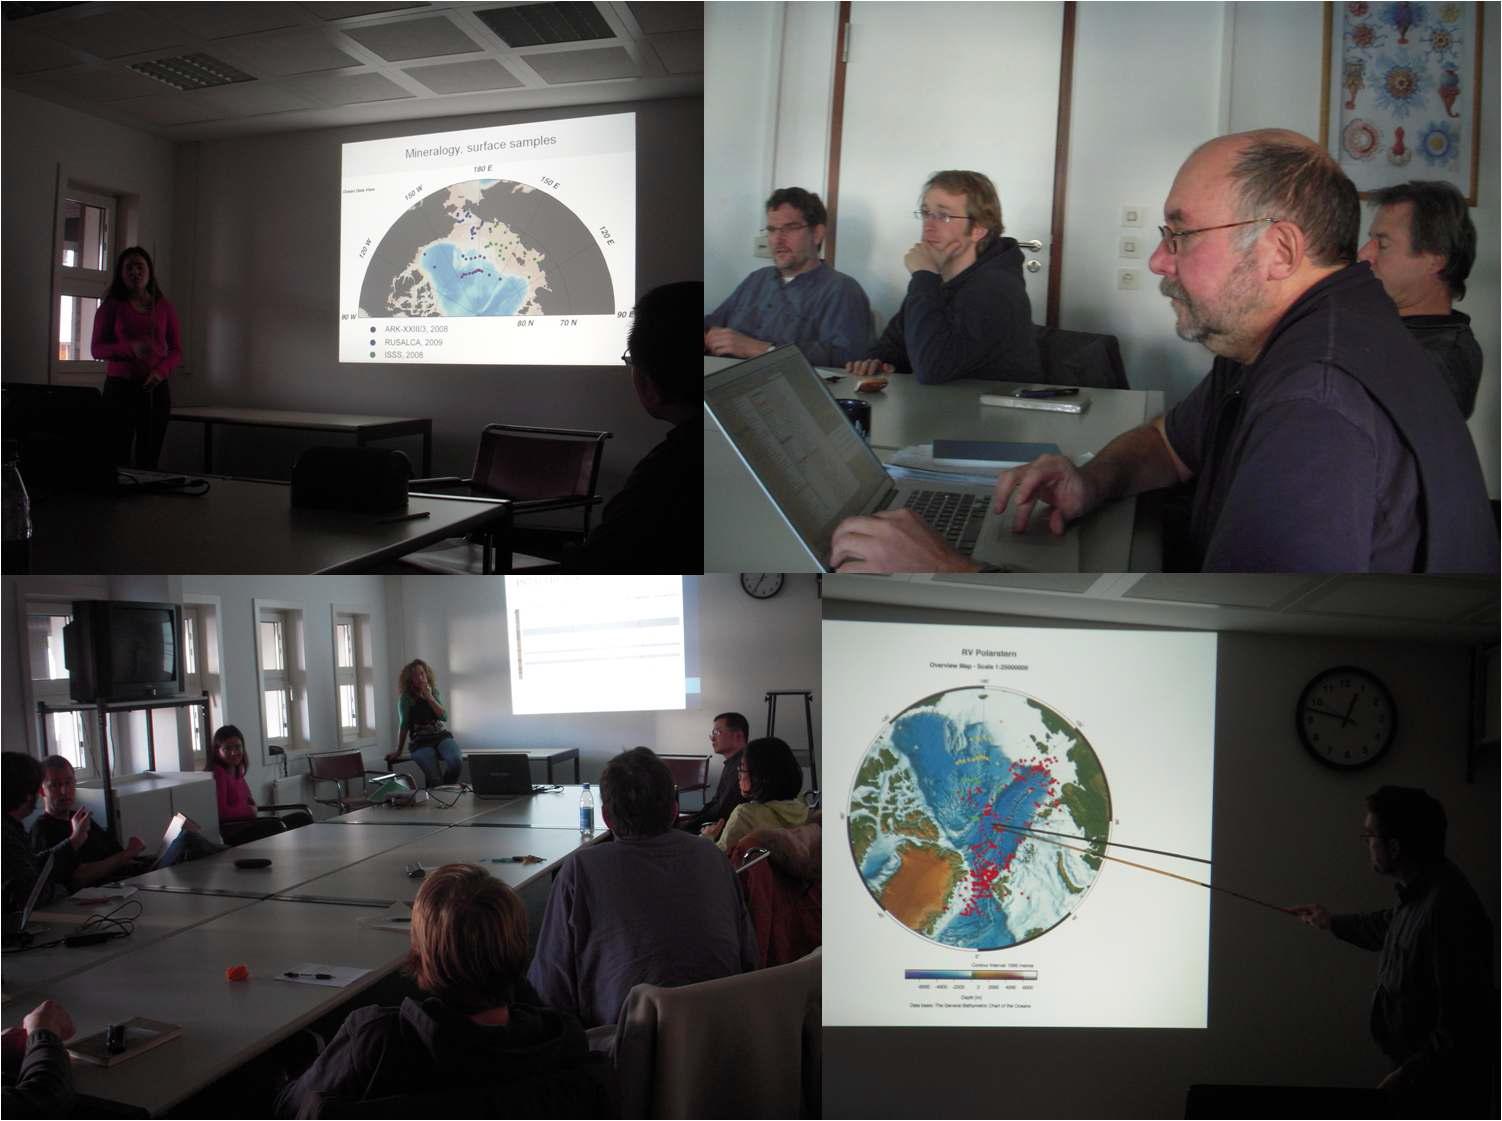 2011년 12월 21일 AWI에서 개최된 제 2차 AWI-KOPRI 공동워크숍에서 참가자들이 북극탐사 결과 및 향후 계획을 발표하는 장면.